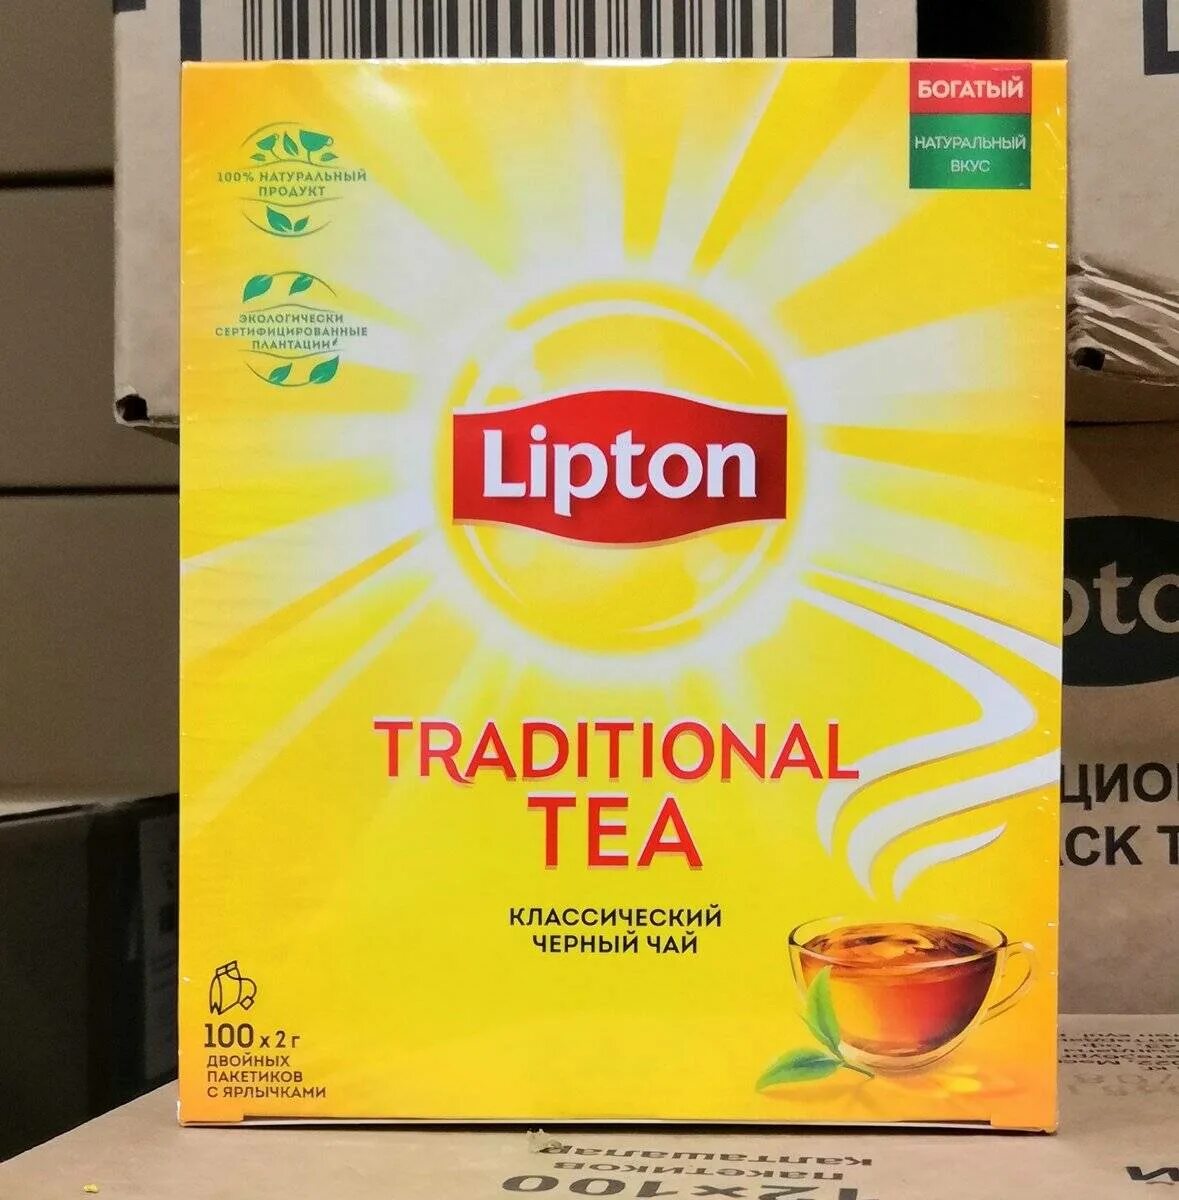 Липтон 100 пак. Классика. Липтон традиционный чай 100п. Чай Липтон классический 100пак. Чай черный Липтон Классик 100 пак.